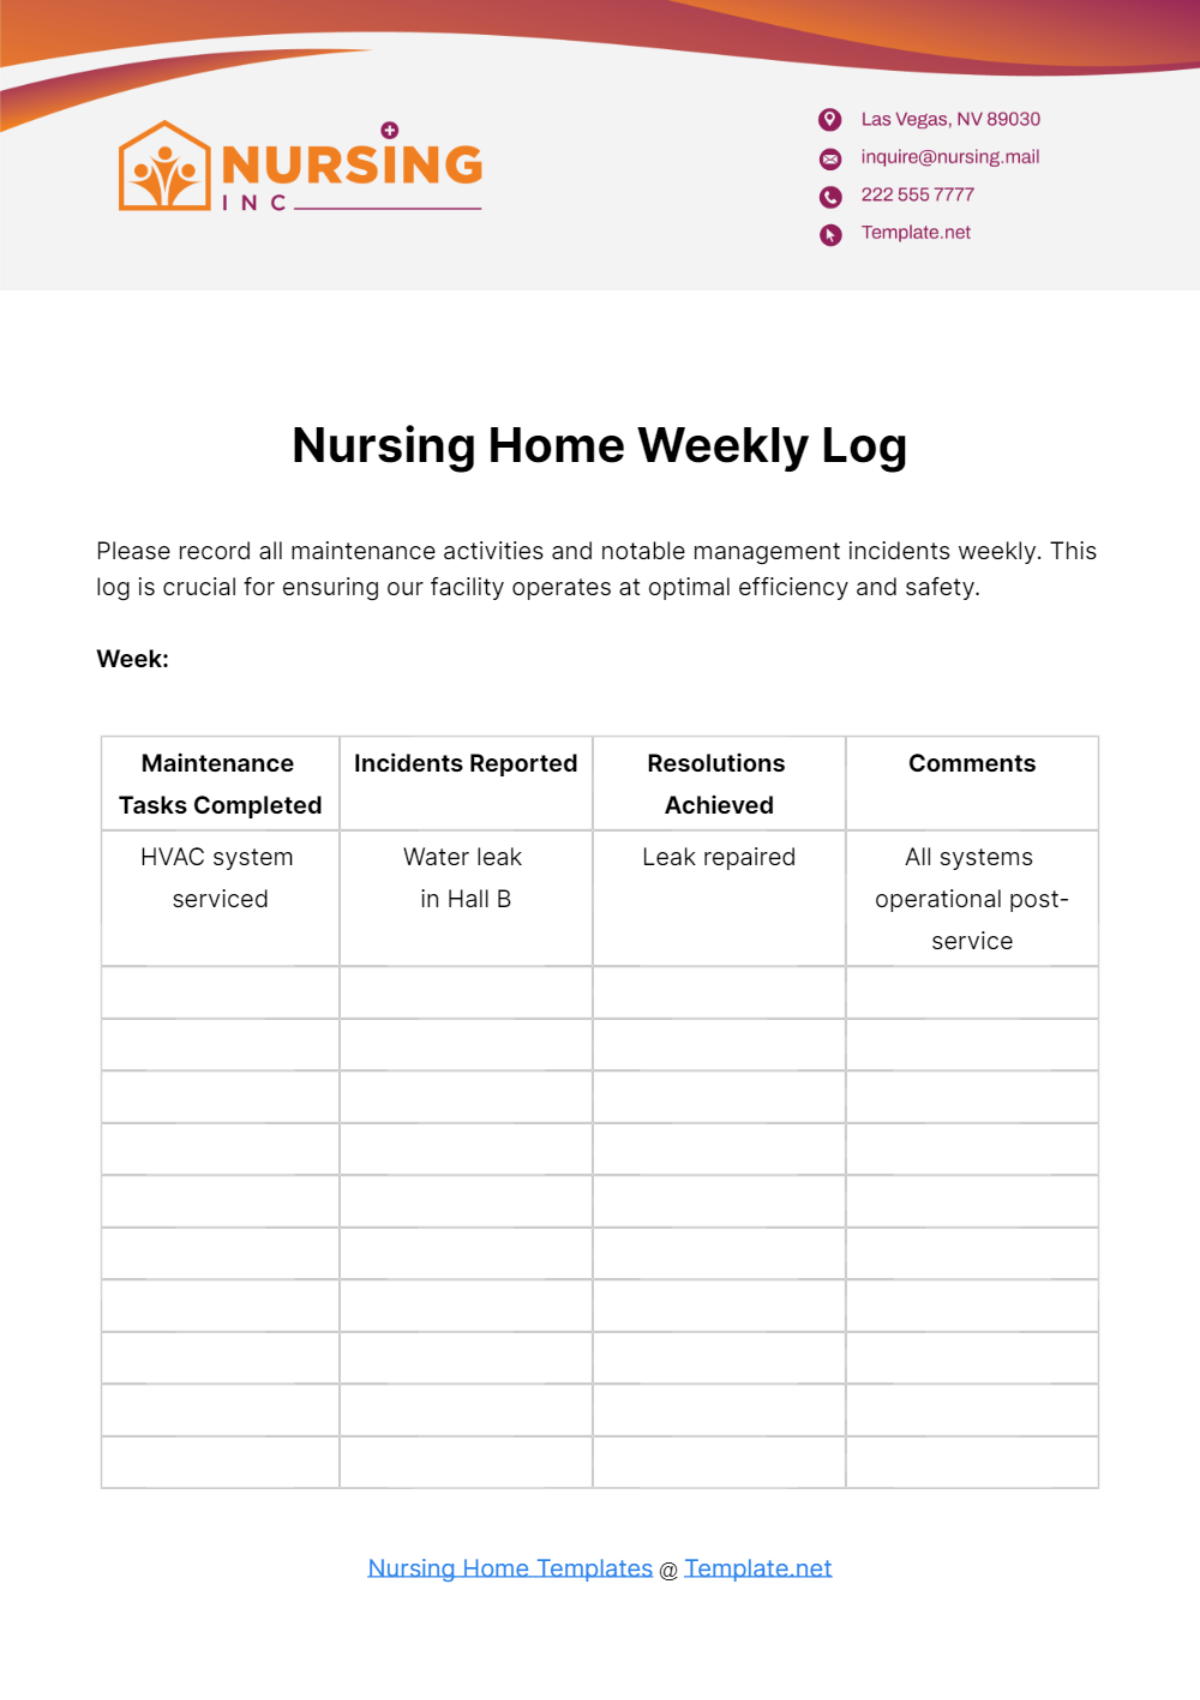 Nursing Home Weekly Log Template